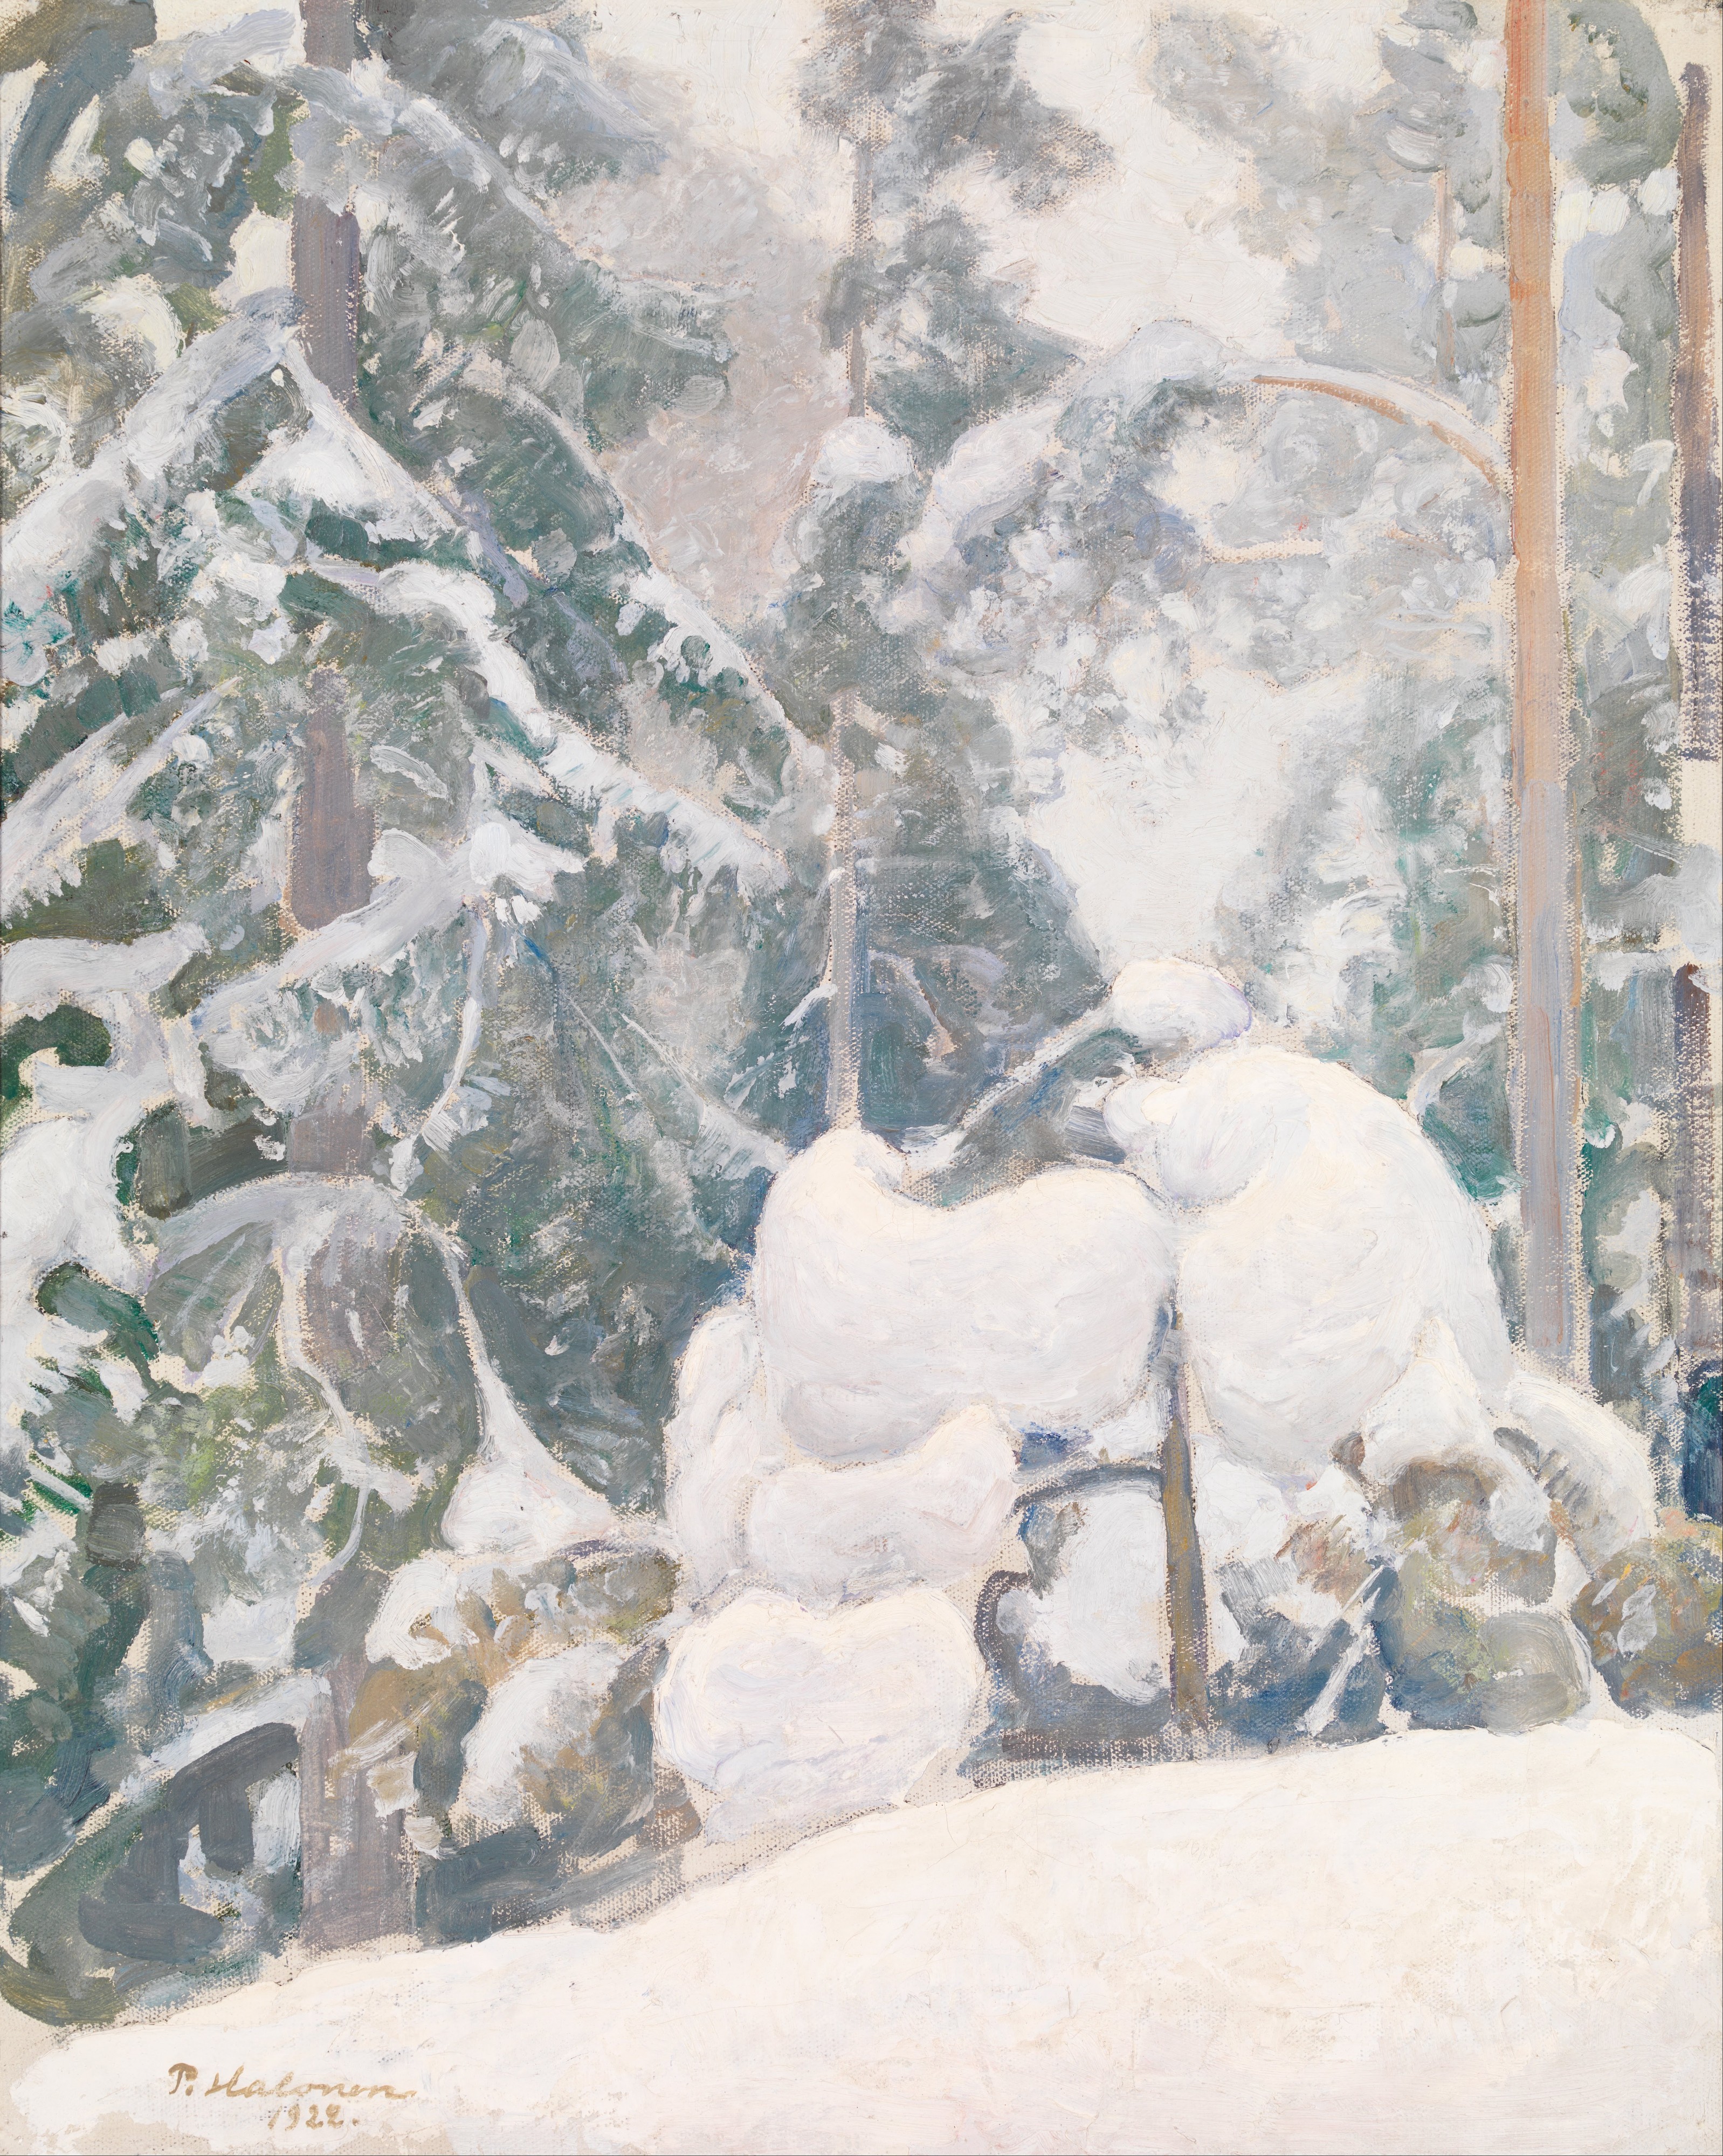 Halonen, Pekka - Winter landscape - Google Art Project